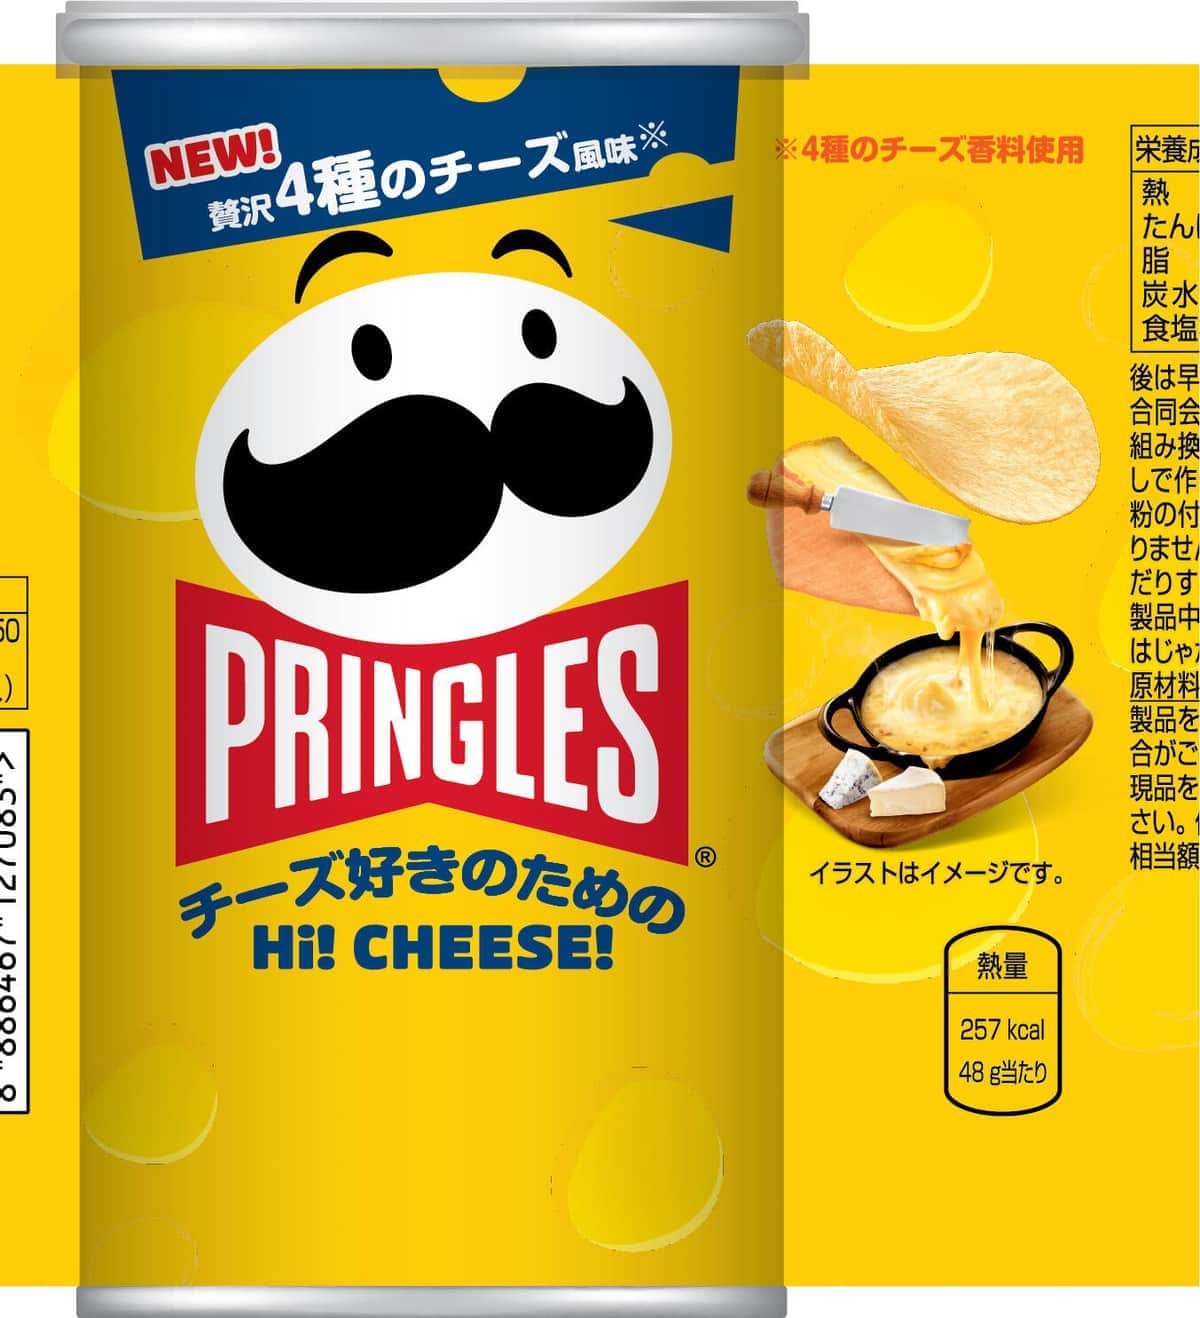 「プリングルズ」新フレーバー「Hi! CHEESE!」　4種の濃厚チーズが香る